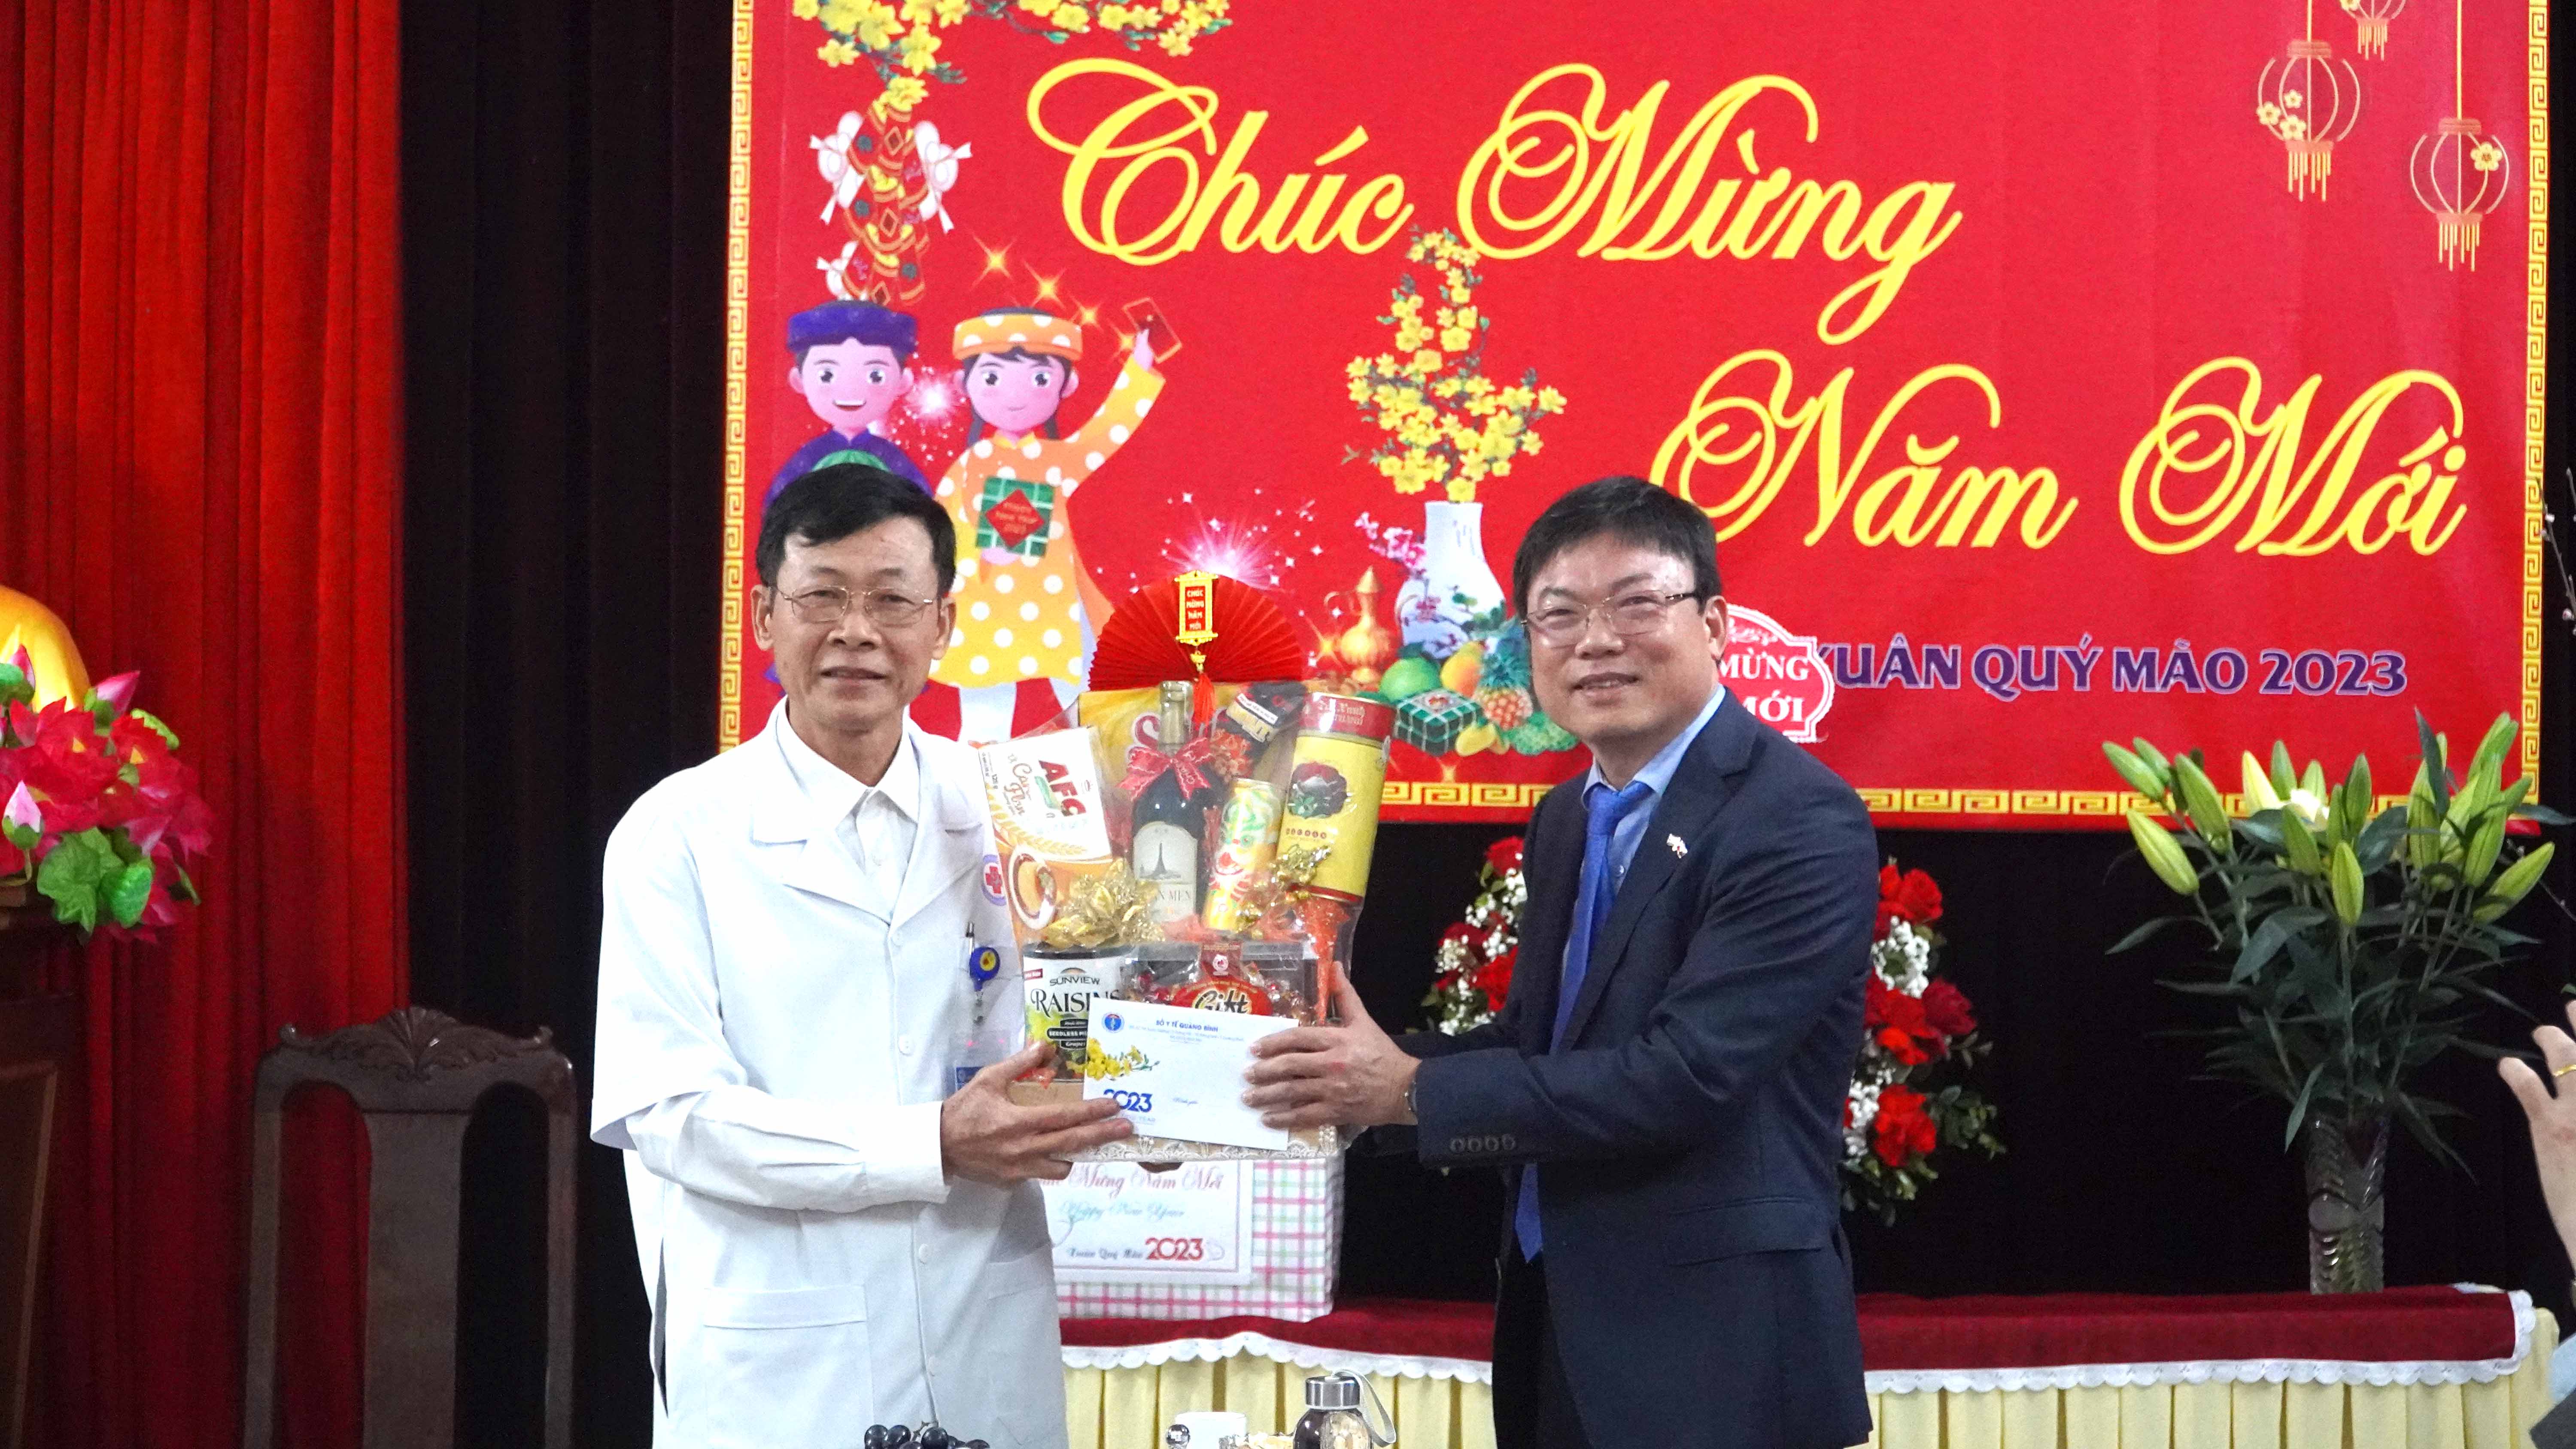 Bác sỹ Dương Thanh Bình Giám đốc Sở Y tế đã đến thăm chúc tết các cán bộ y bác sỹ làm nhiệm vụ trong đêm giao thừa tại Bệnh viện khoa huyện Quảng Ninh23